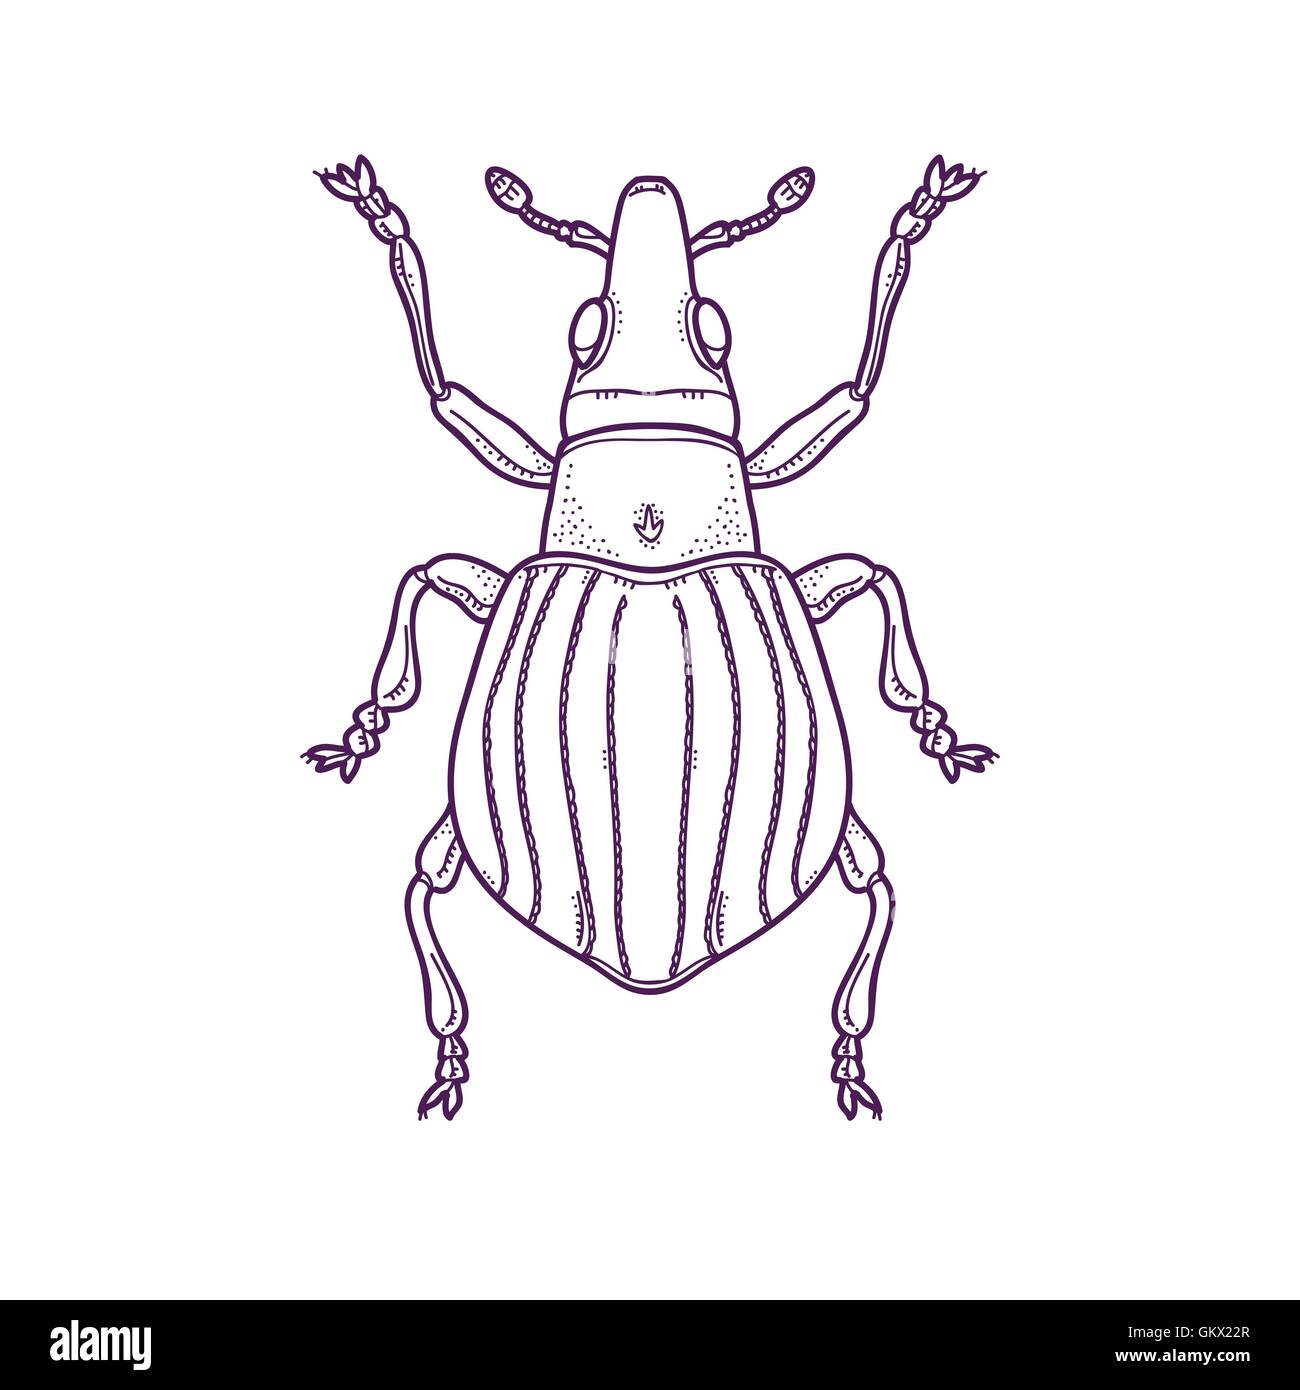 Vektor Illustration der Gliederung Beetle Bug Insekt Hand gezeichnet, Apion artemisiae Stock Vektor